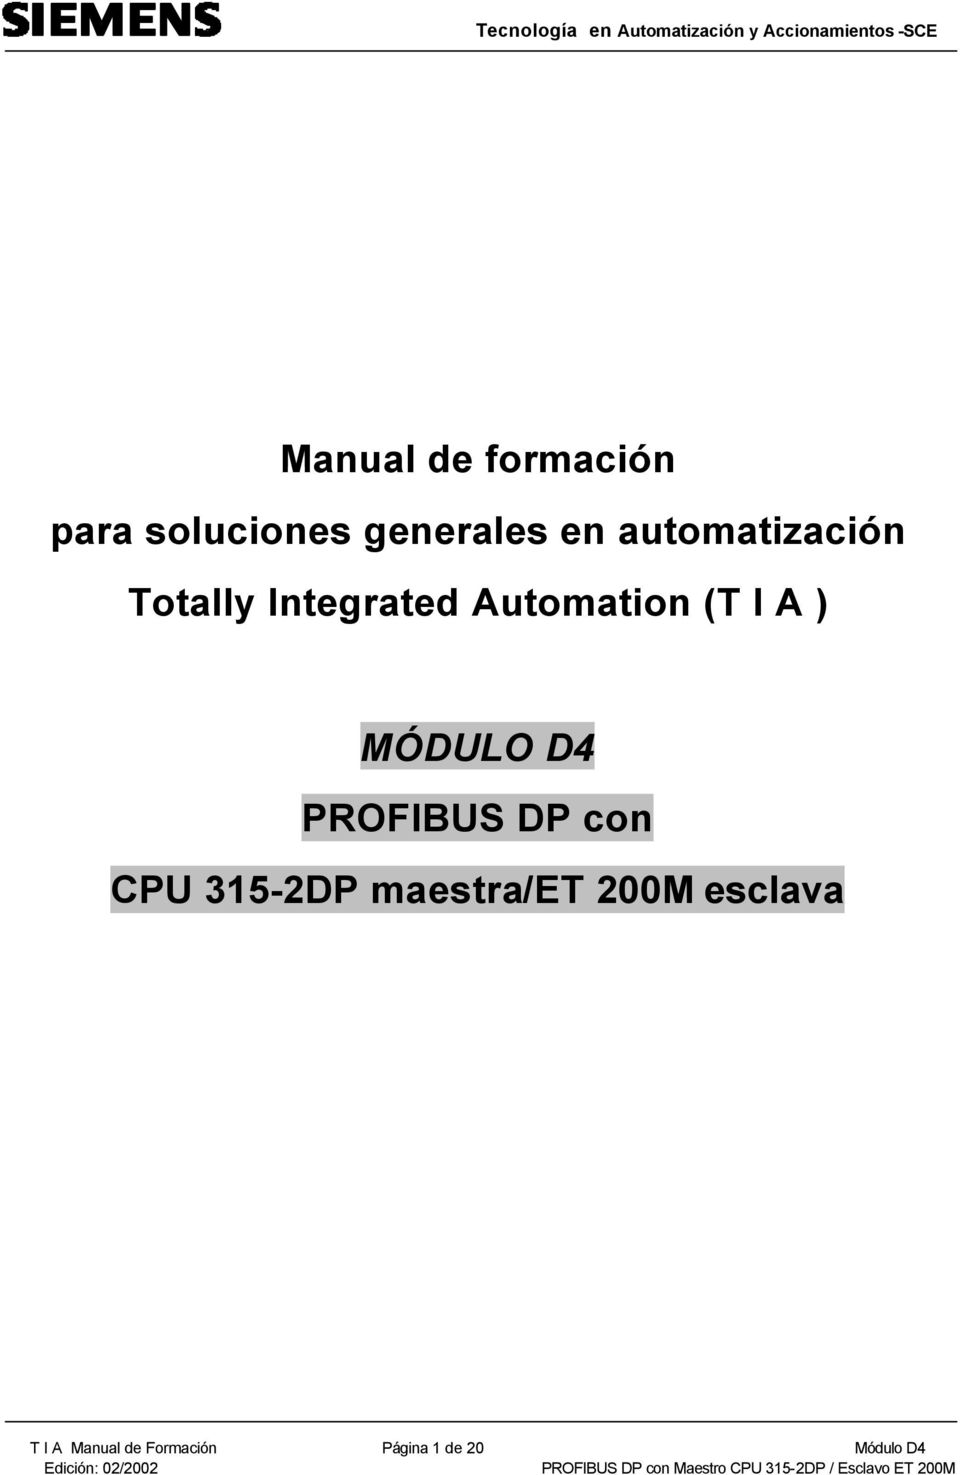 MÓDULO D4 PROFIBUS DP con CPU 315-2DP maestra/et 200M